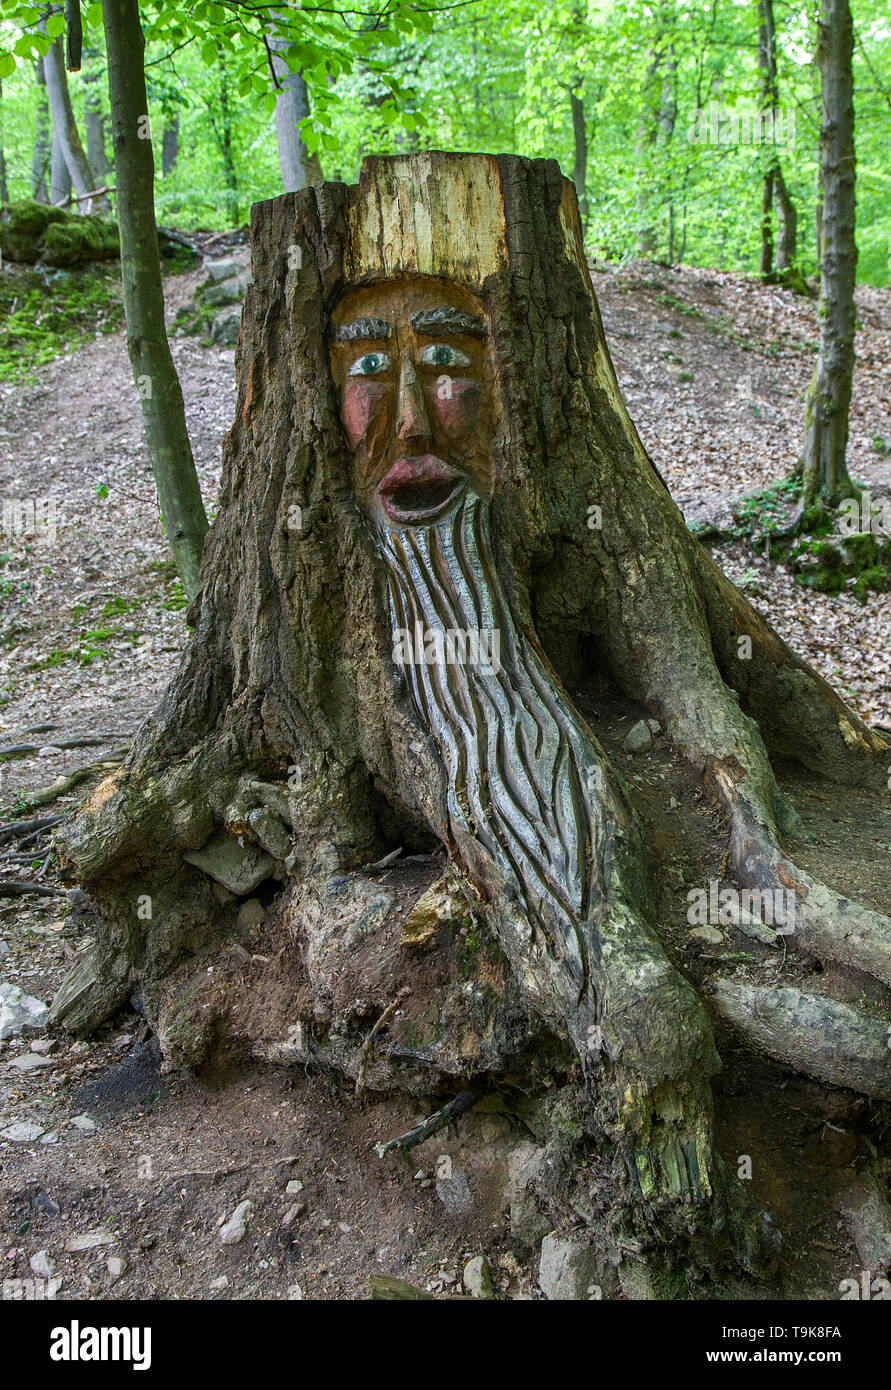 Geschnitzte Gesicht in einem Baumstumpf, Steckeschlääfer-Klamm, Binger Wald, Bingen am Rhein, Rheinland-Pfalz, Deutschland Stockfoto